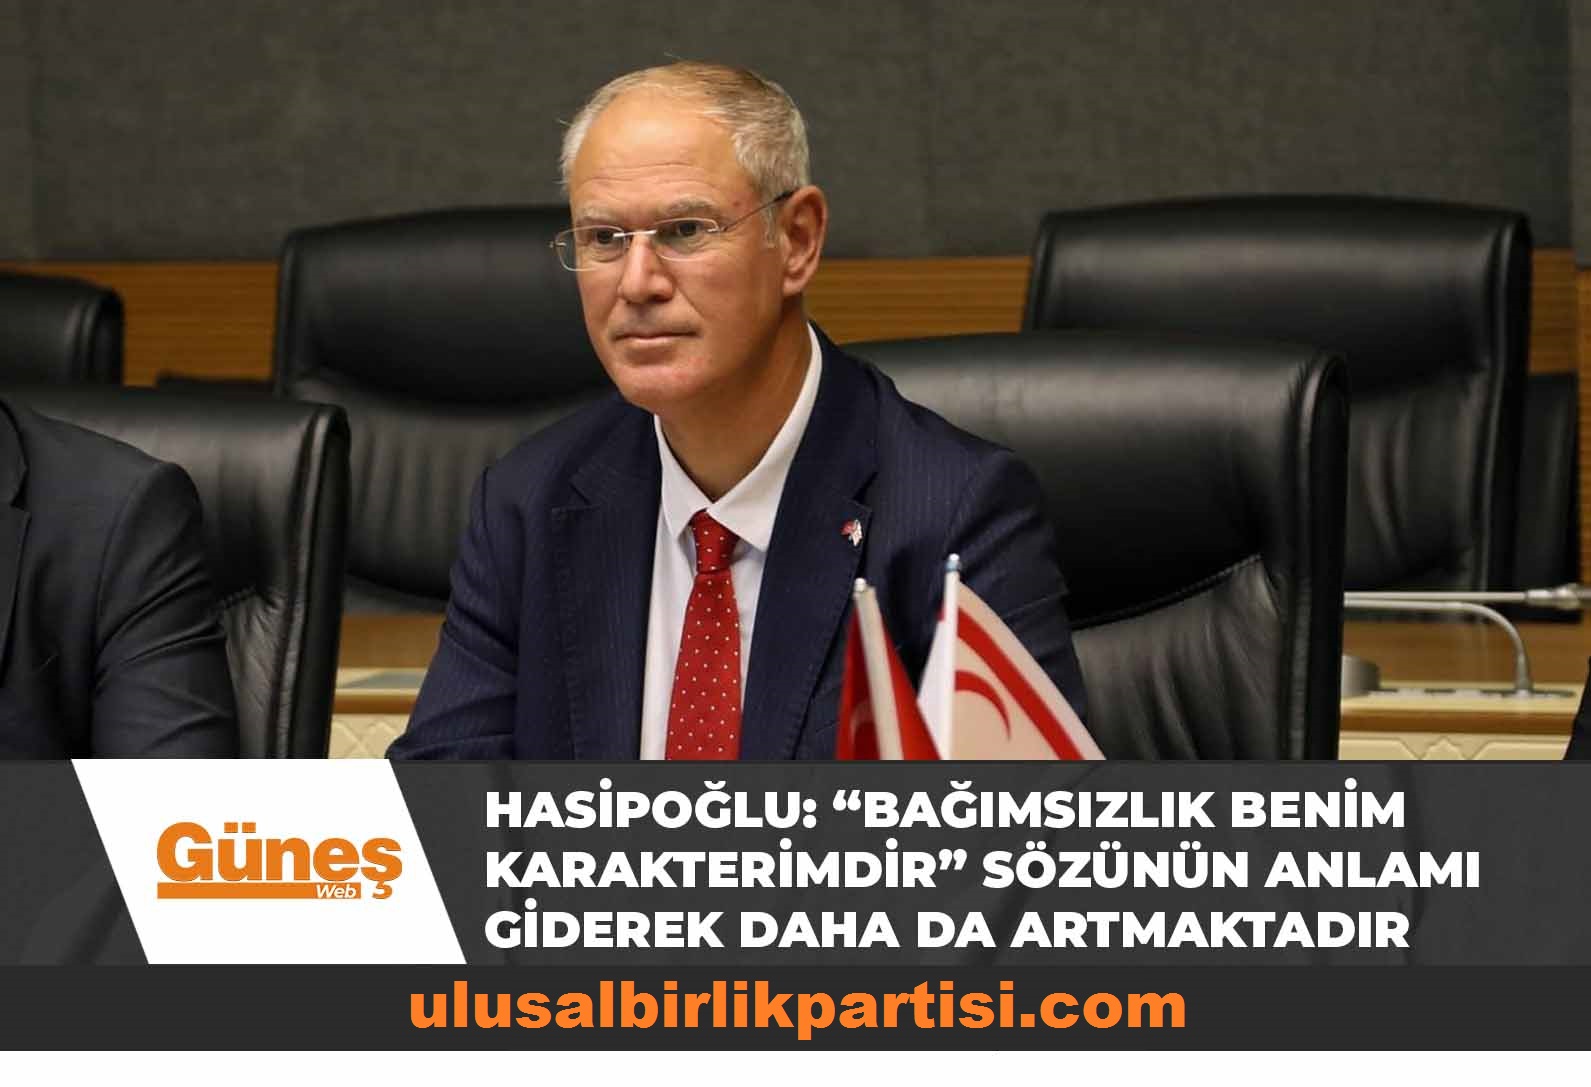 Read more about the article Hasipoğlu: “Bağımsızlık benim karakterimdir” sözünün anlamı giderek daha da artmaktadır